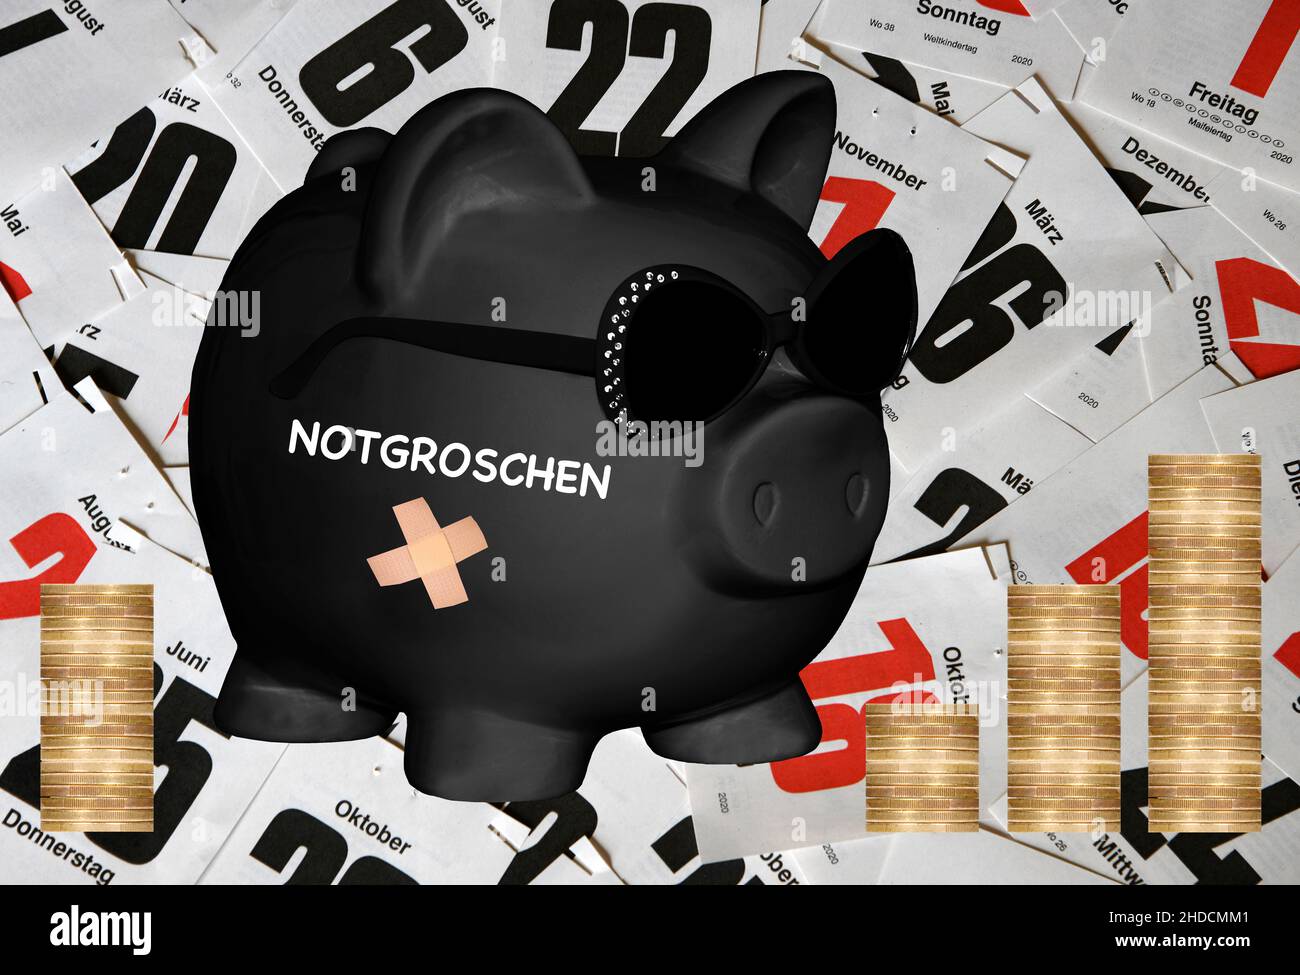 Sparschwein, Sparen, Vorsorge, Aufdruck: Notgroschen, Notcent, Noteuro, Stock Photo